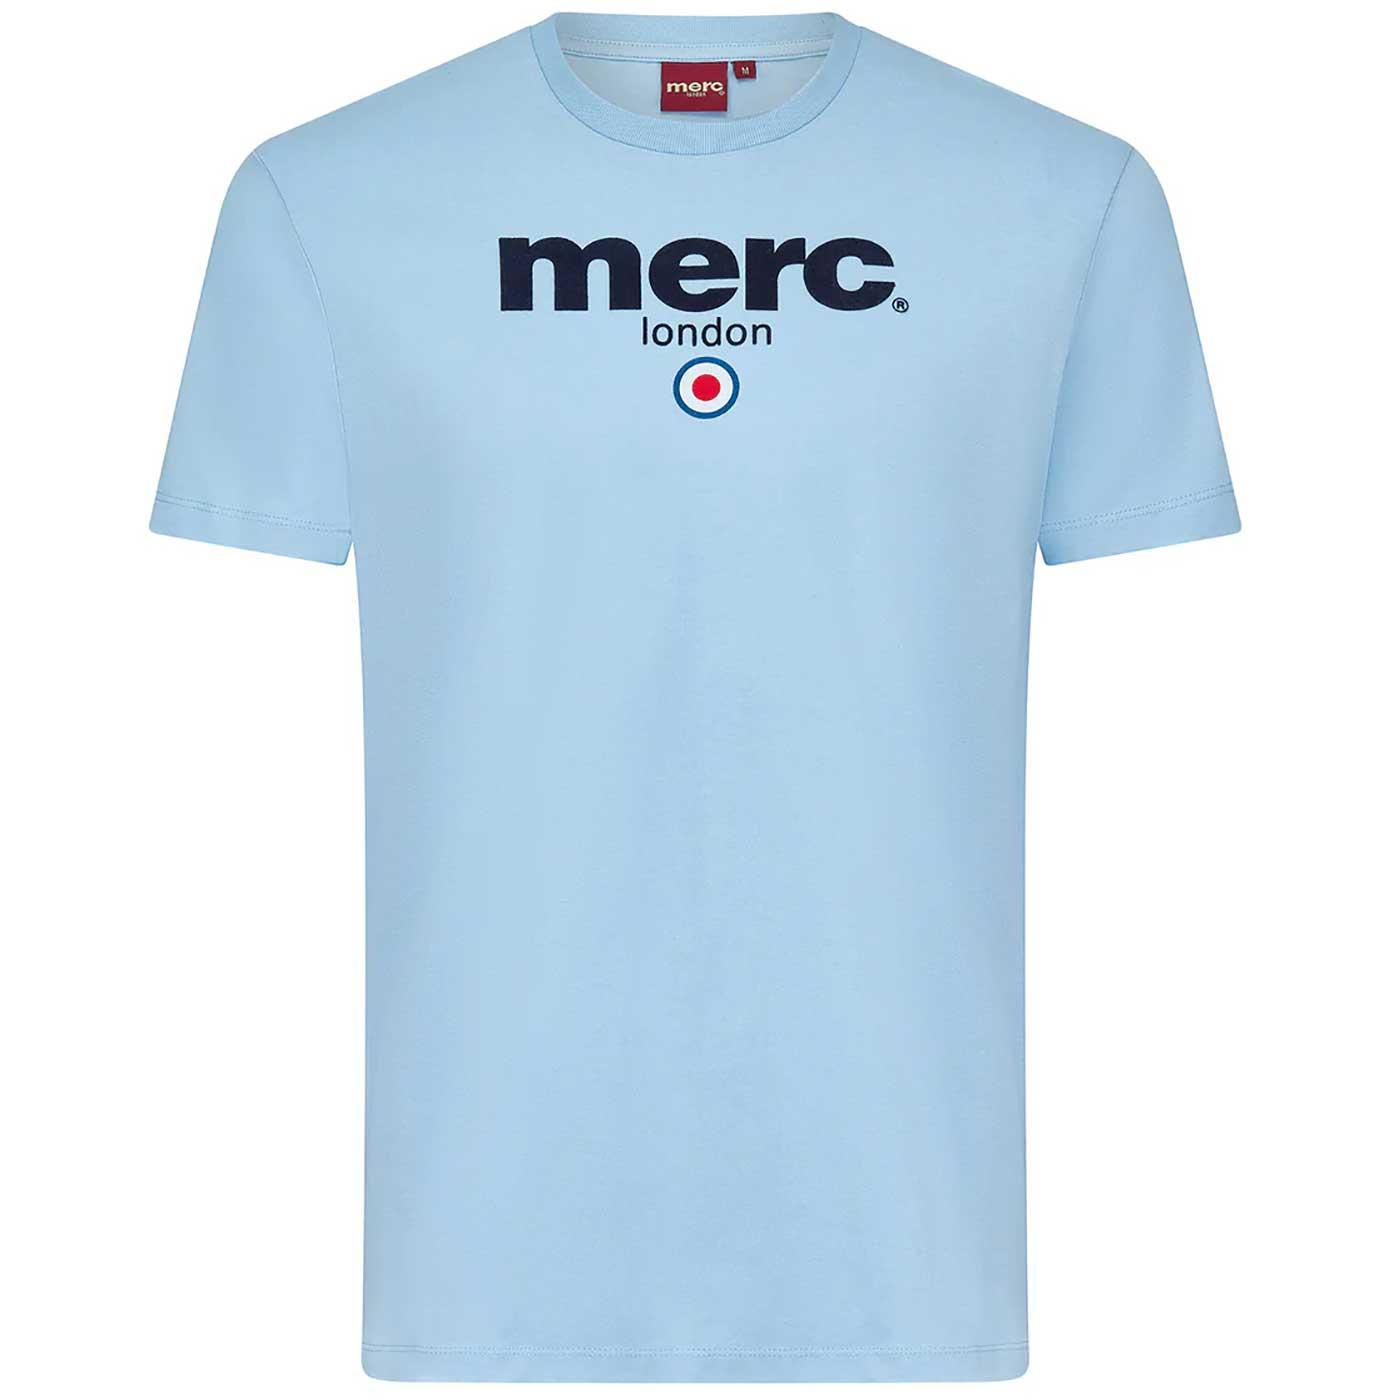 Brighton MERC Retro Mod Target Signature T-Shirt S